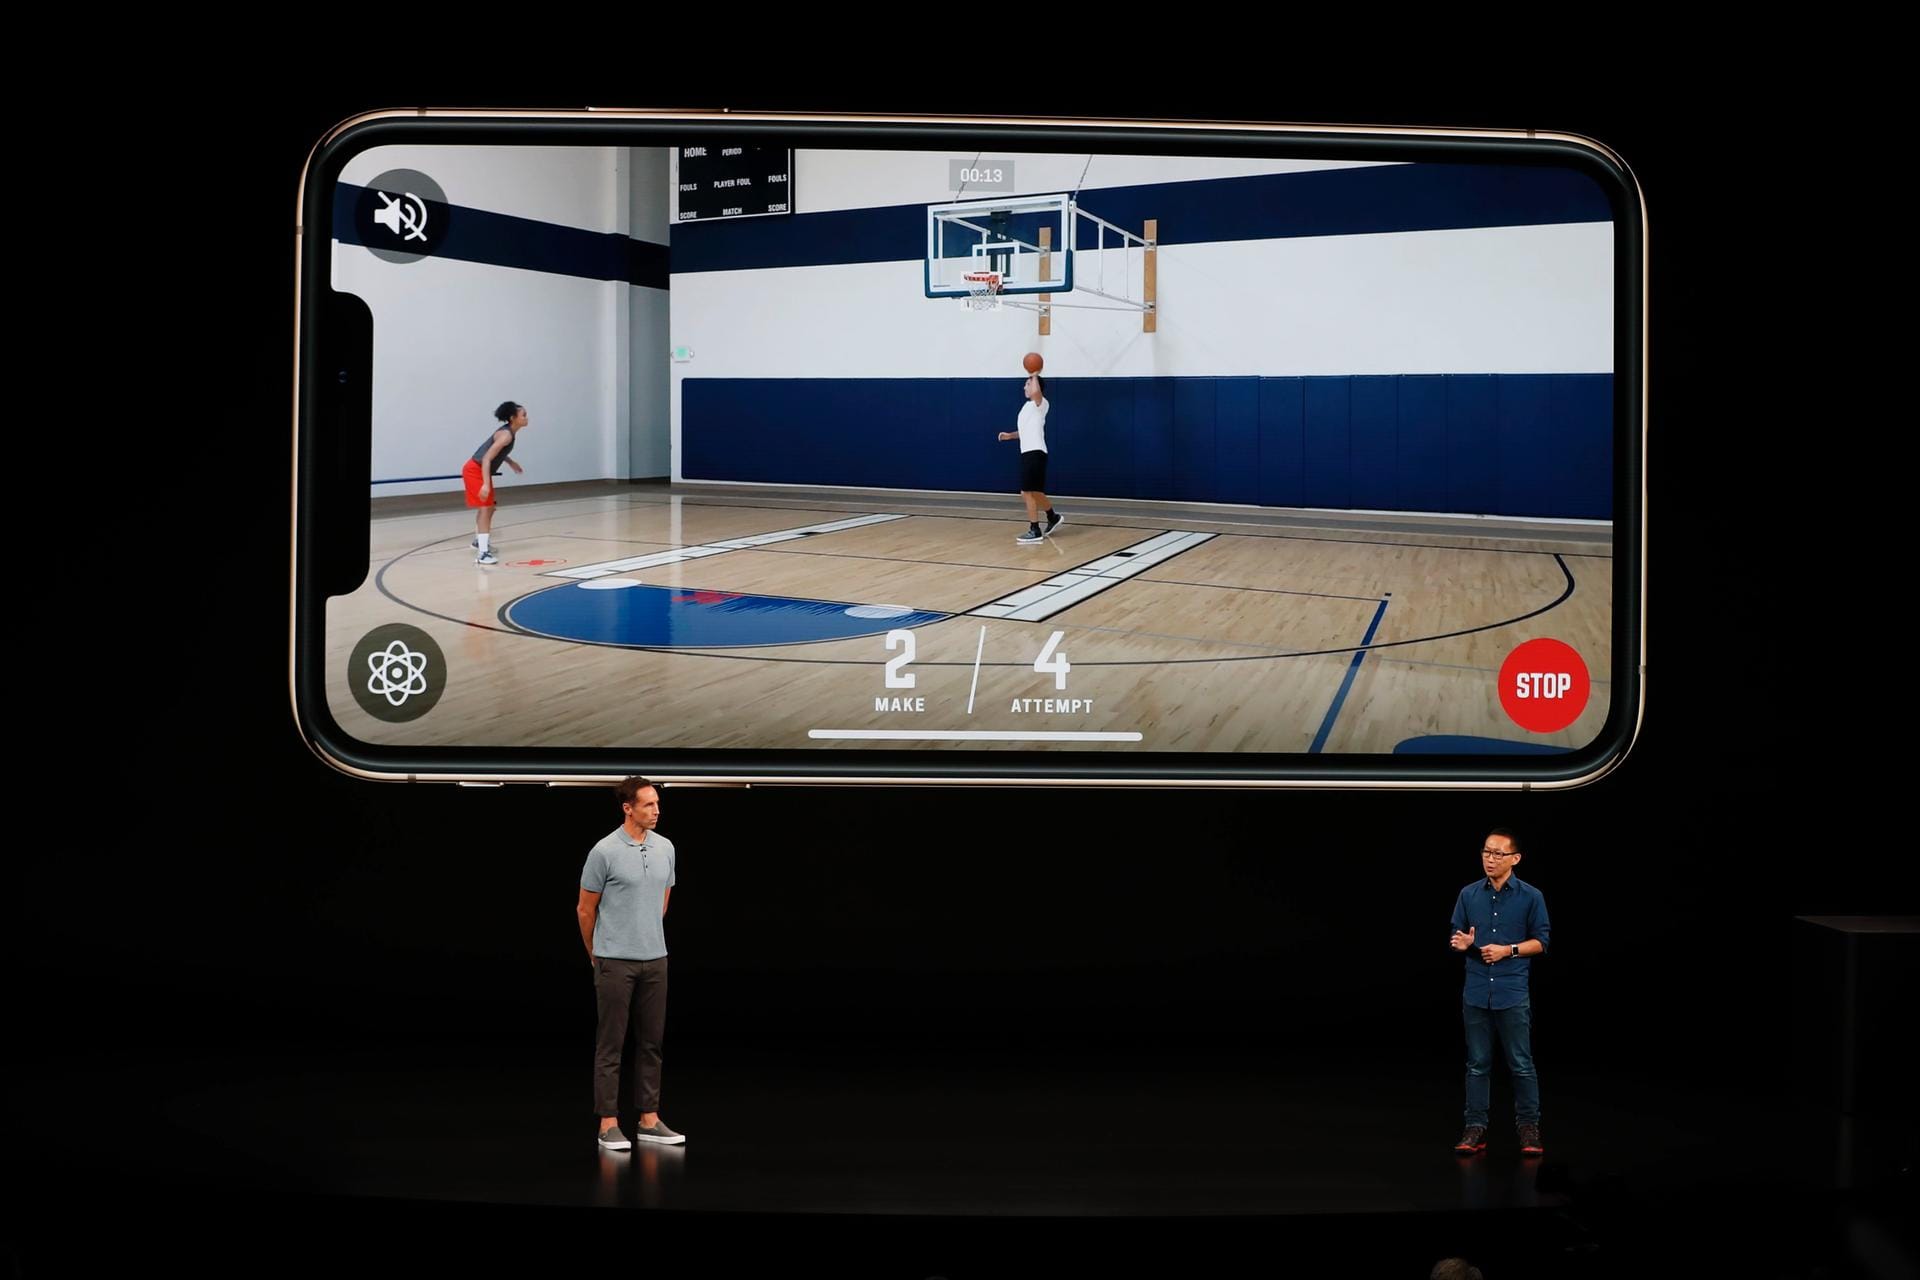 Als Beispiel wurde eine App demonstriert, die in Echtzeit die Bewegungen eines Basketball-Spielers analysieren und Ratschläge geben kann. Apple setzt darauf, Anwendungen mit Künstlicher Intelligenz auf den Geräten selbst laufen zu lassen, während Konkurrenten wie Google dafür stärker Cloud-Dienste einbinden.